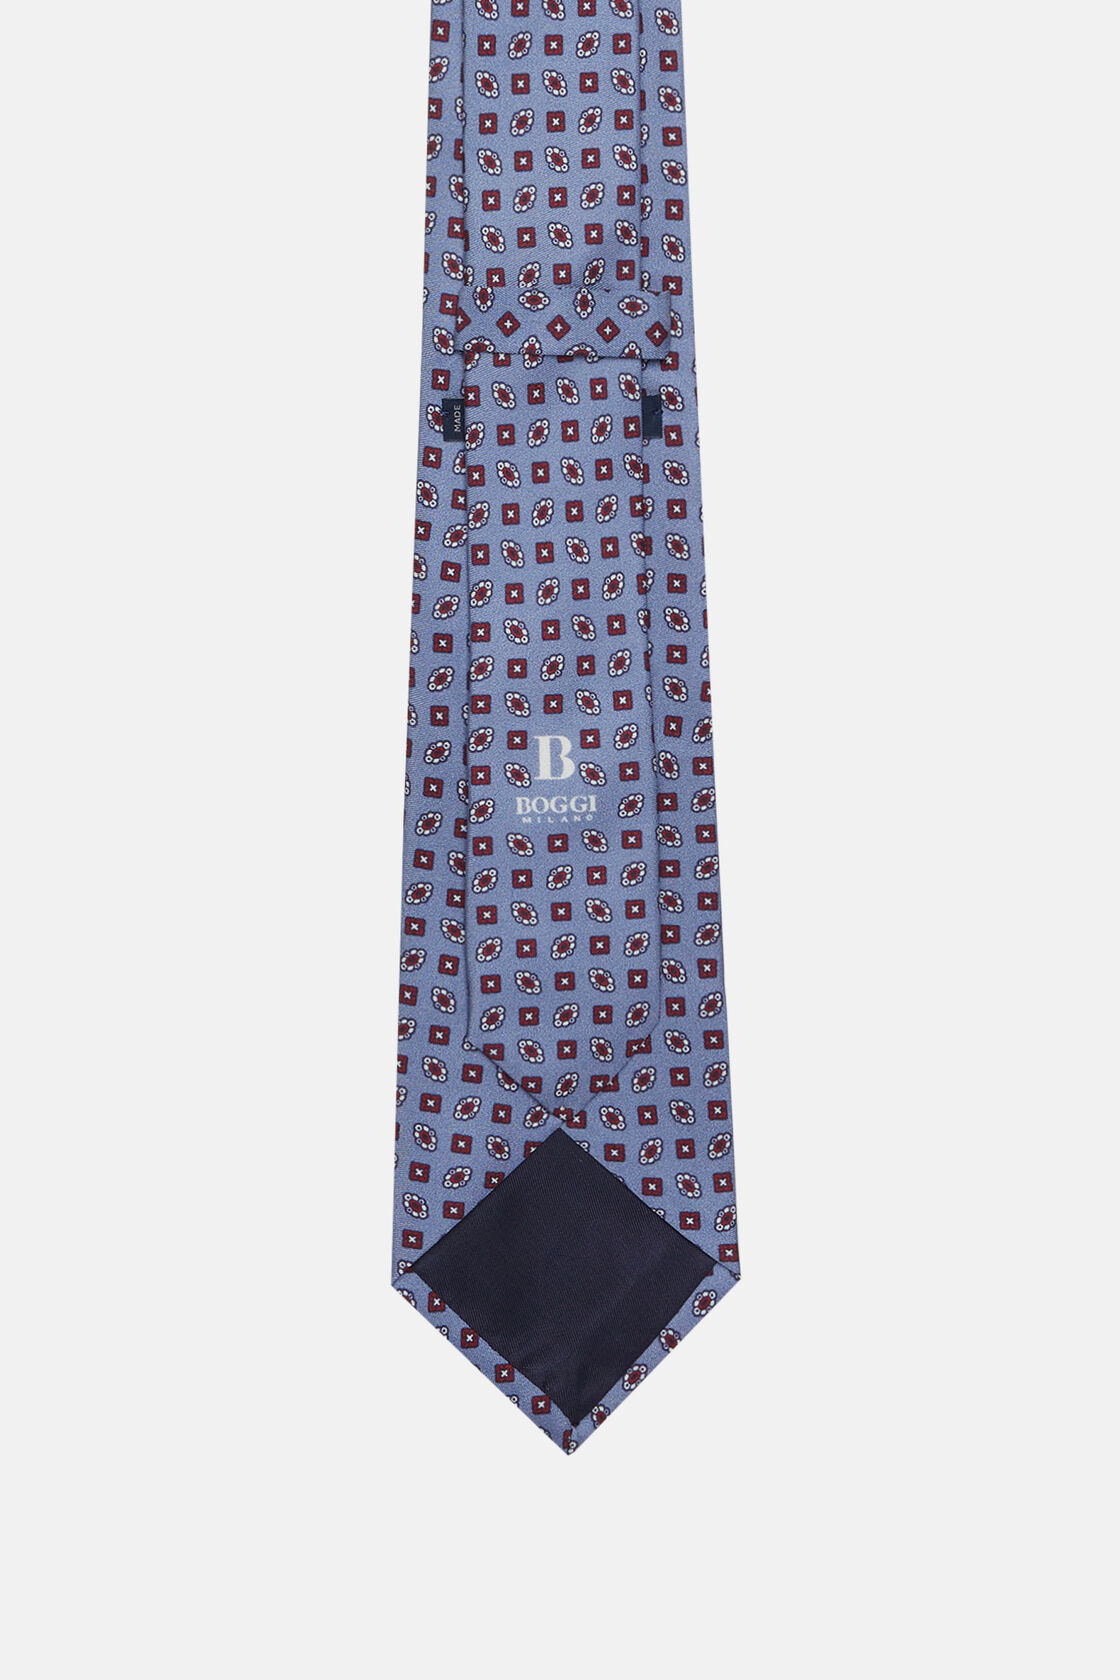 Cravate Motif Géométrique En Soie, Bleu clair, hi-res